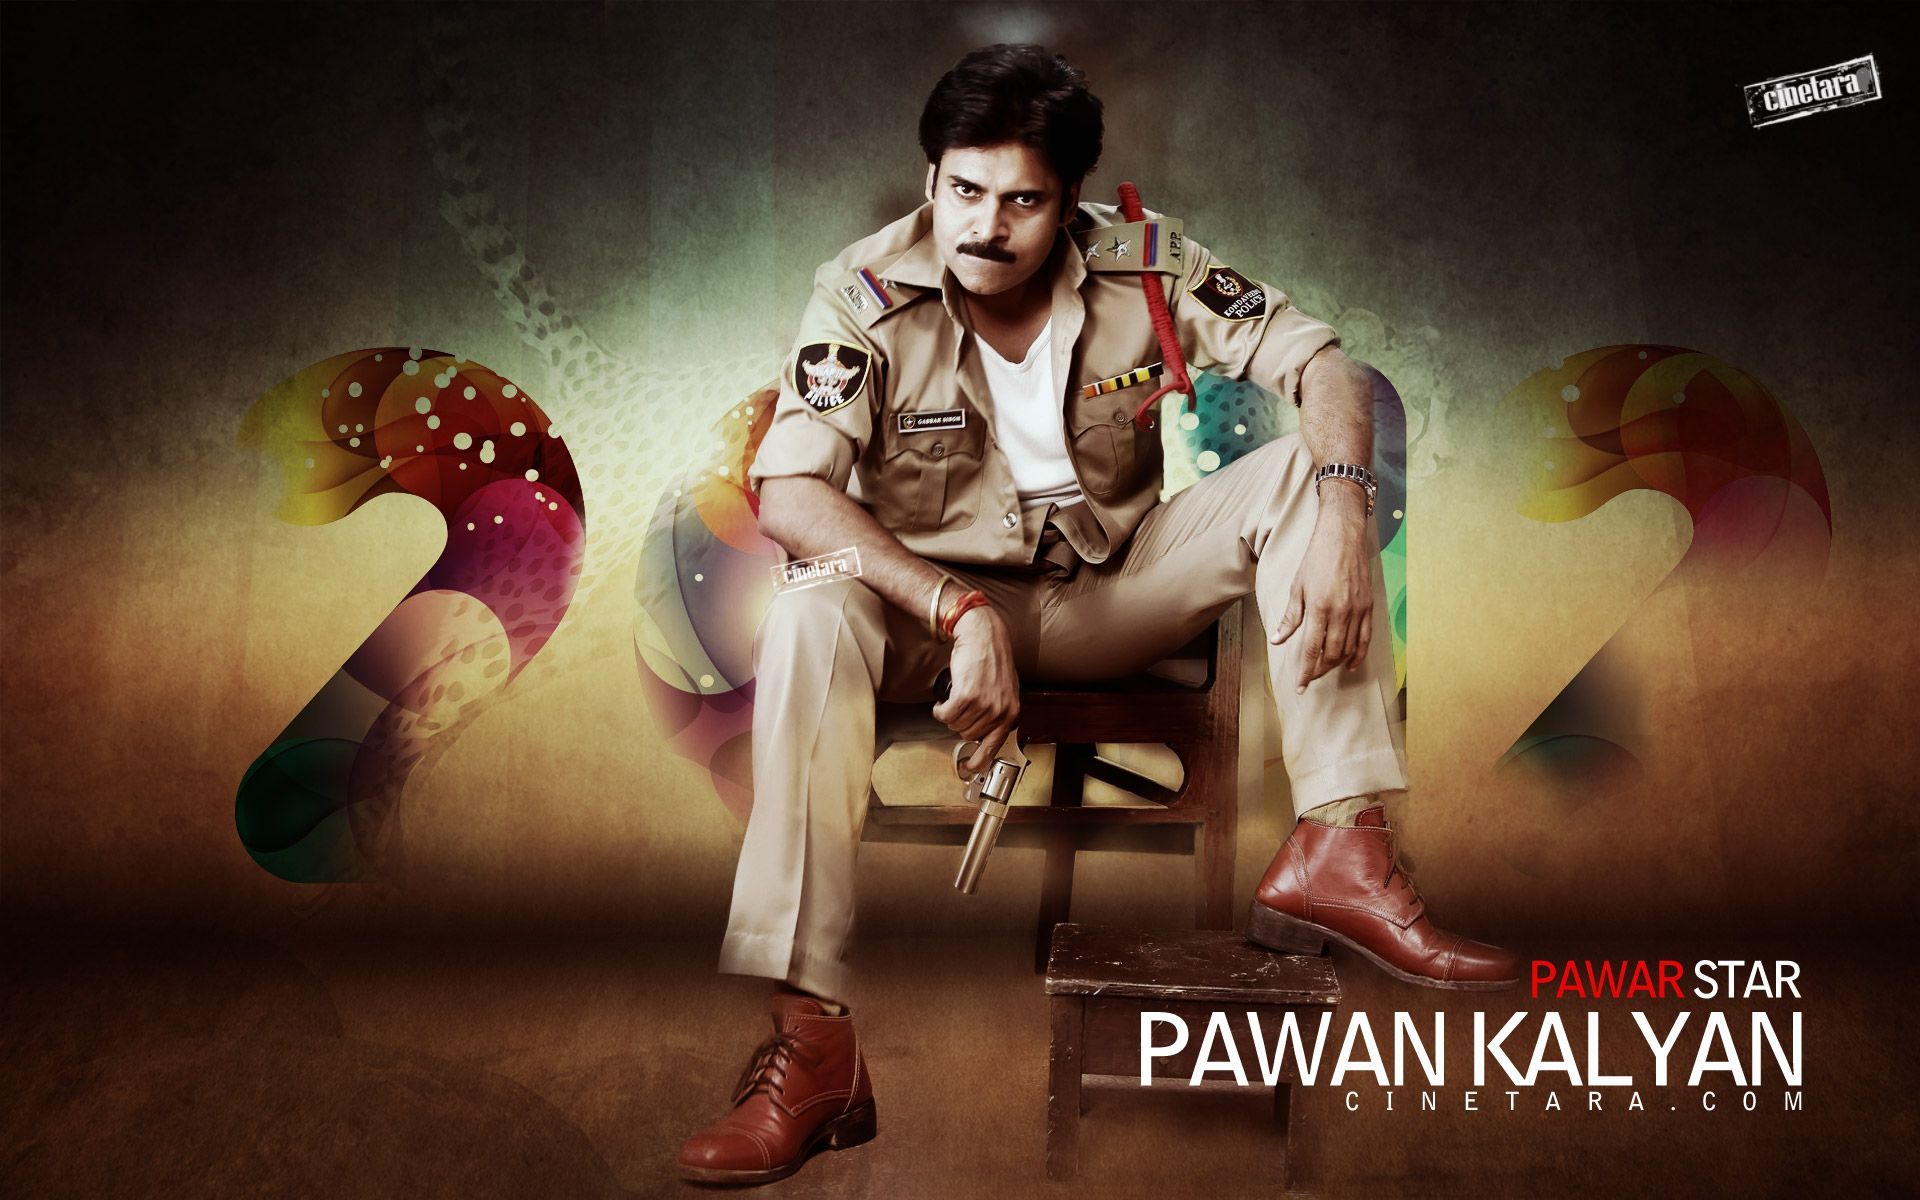 Power Star Pawan Kalyan as Gabbarsingh. Cinetara Pawan Kalyan